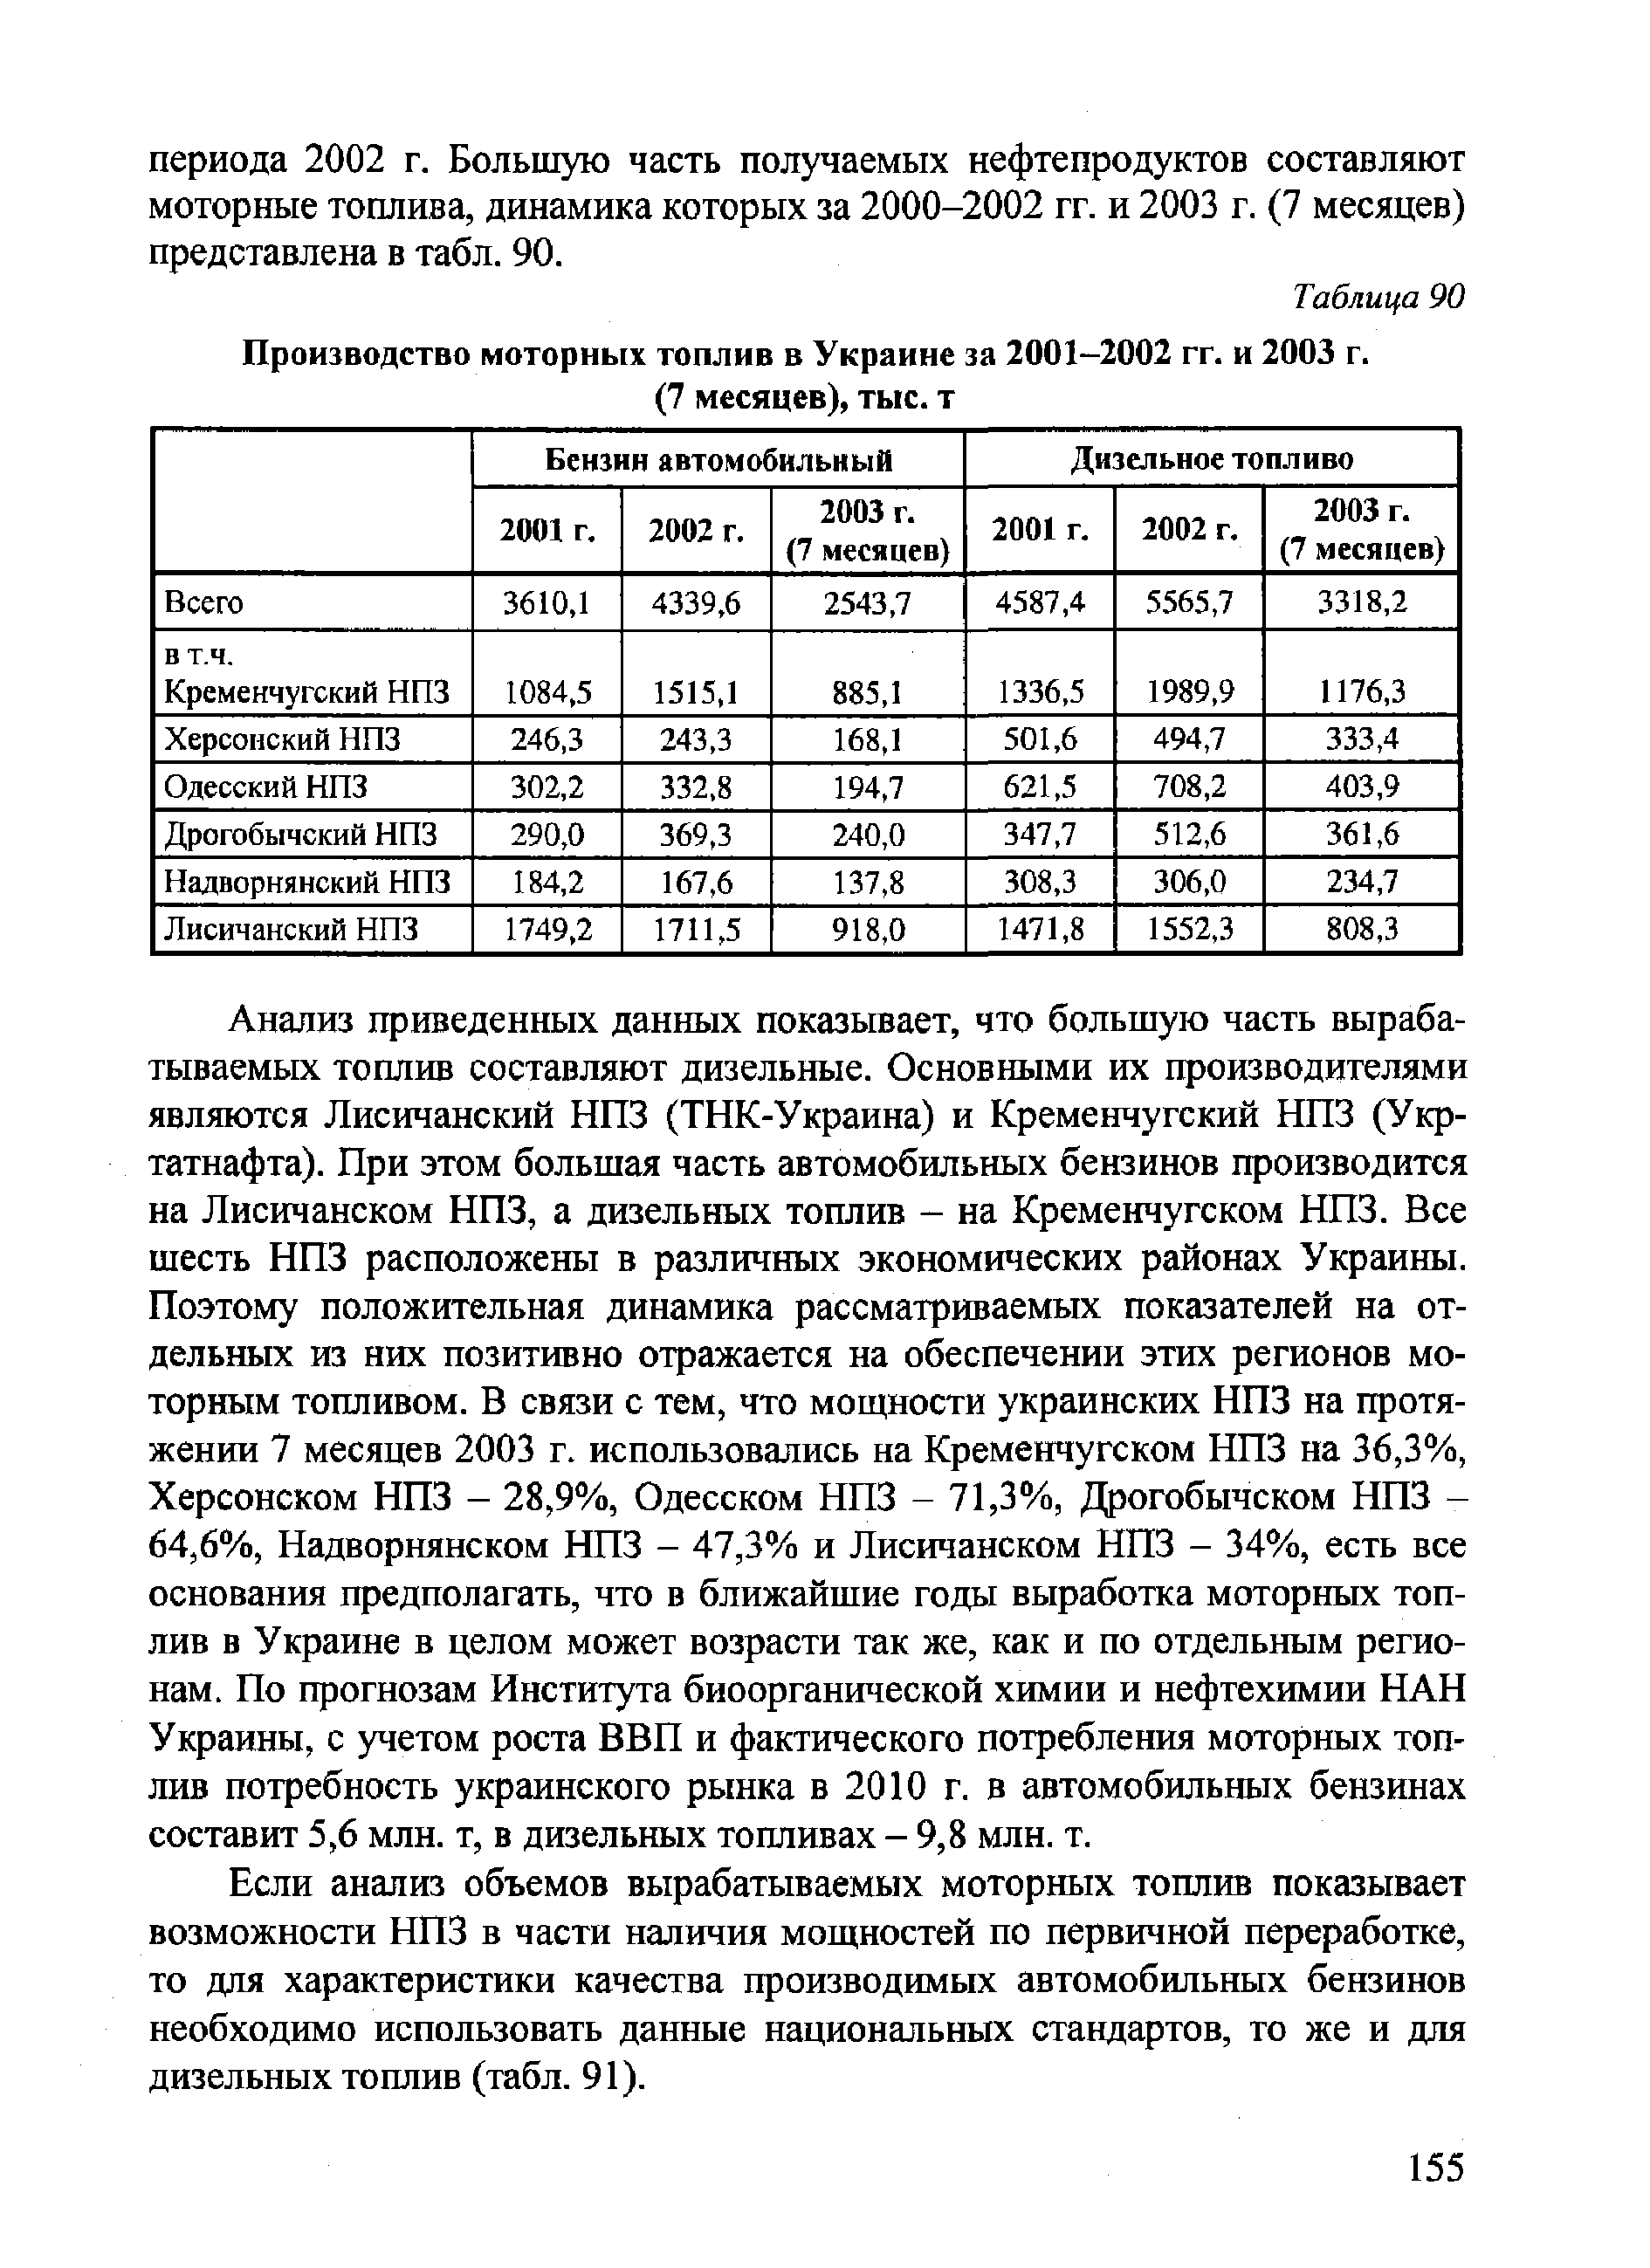 Производство моторных топлив в Украине за 2001—2002 гг. и 2003 г.
